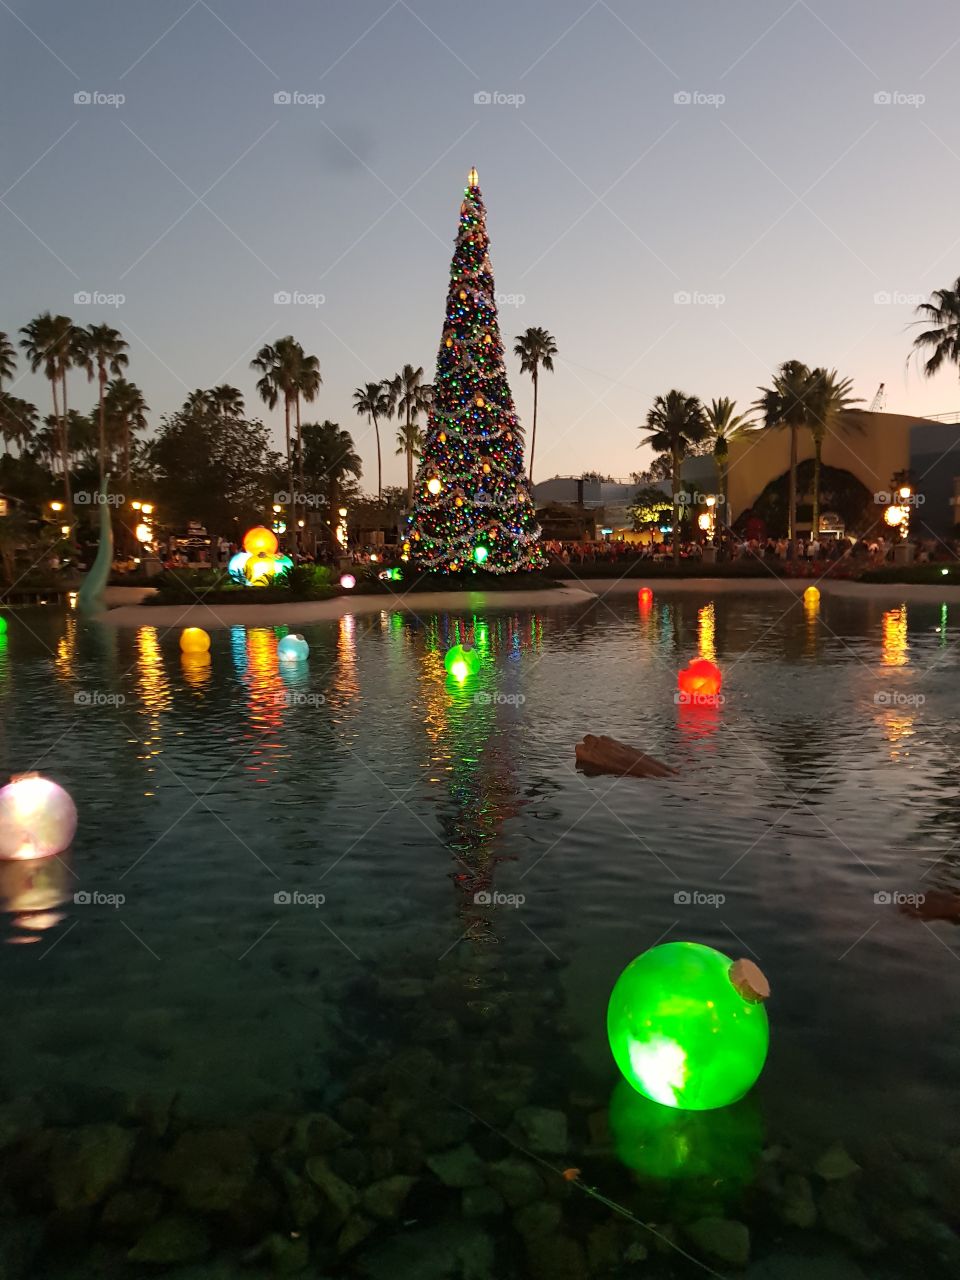 Hollywood studios, Florida, at Christmas